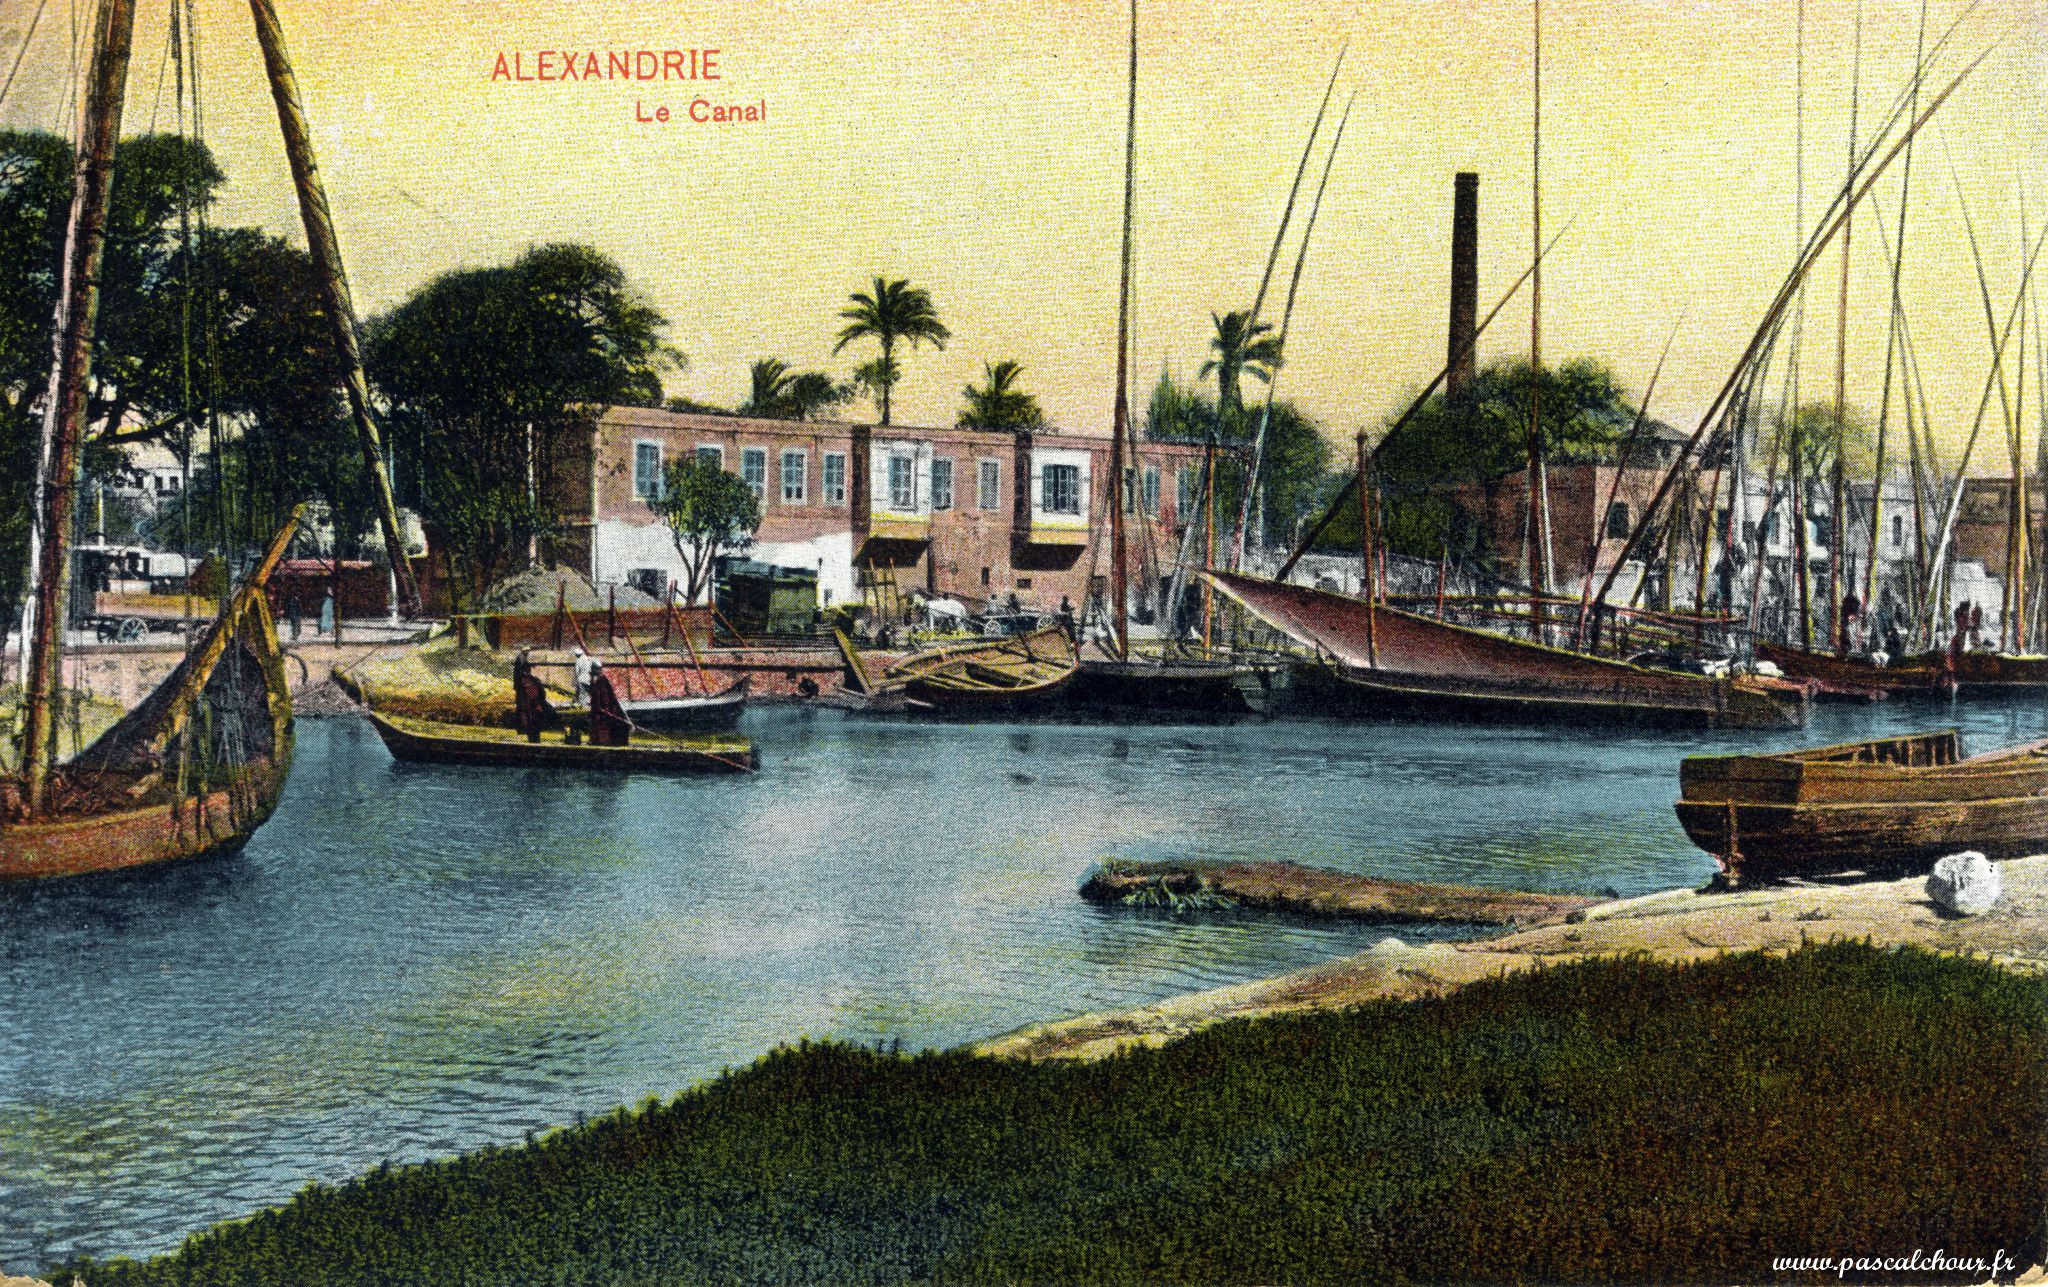 Alexandrie, le canal